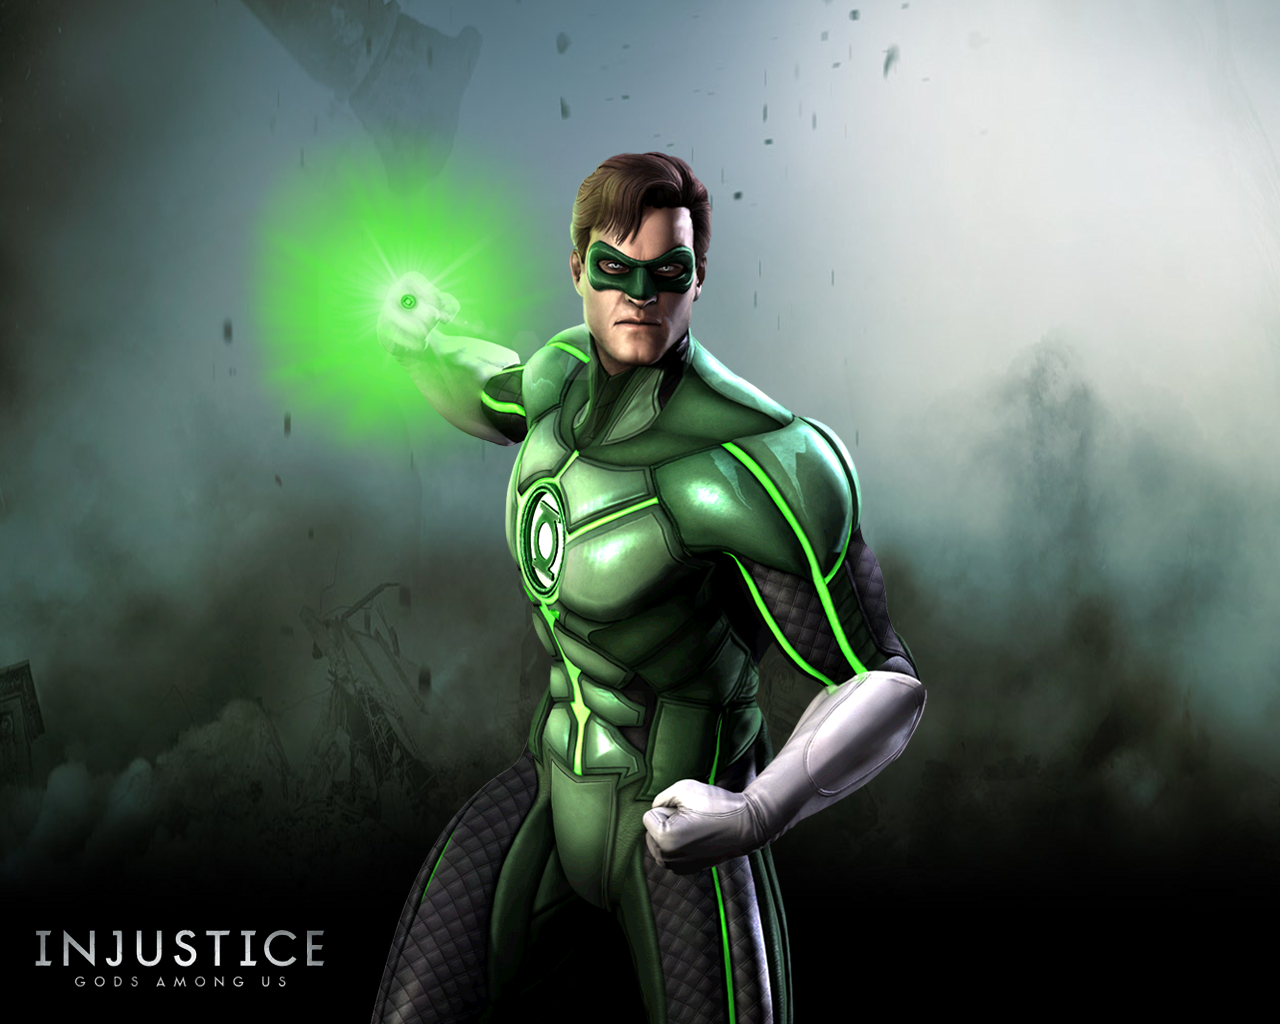 carta da parati dell'ingiustizia,personaggio fittizio,lanterna verde,supereroe,lega della giustizia,supercattivo